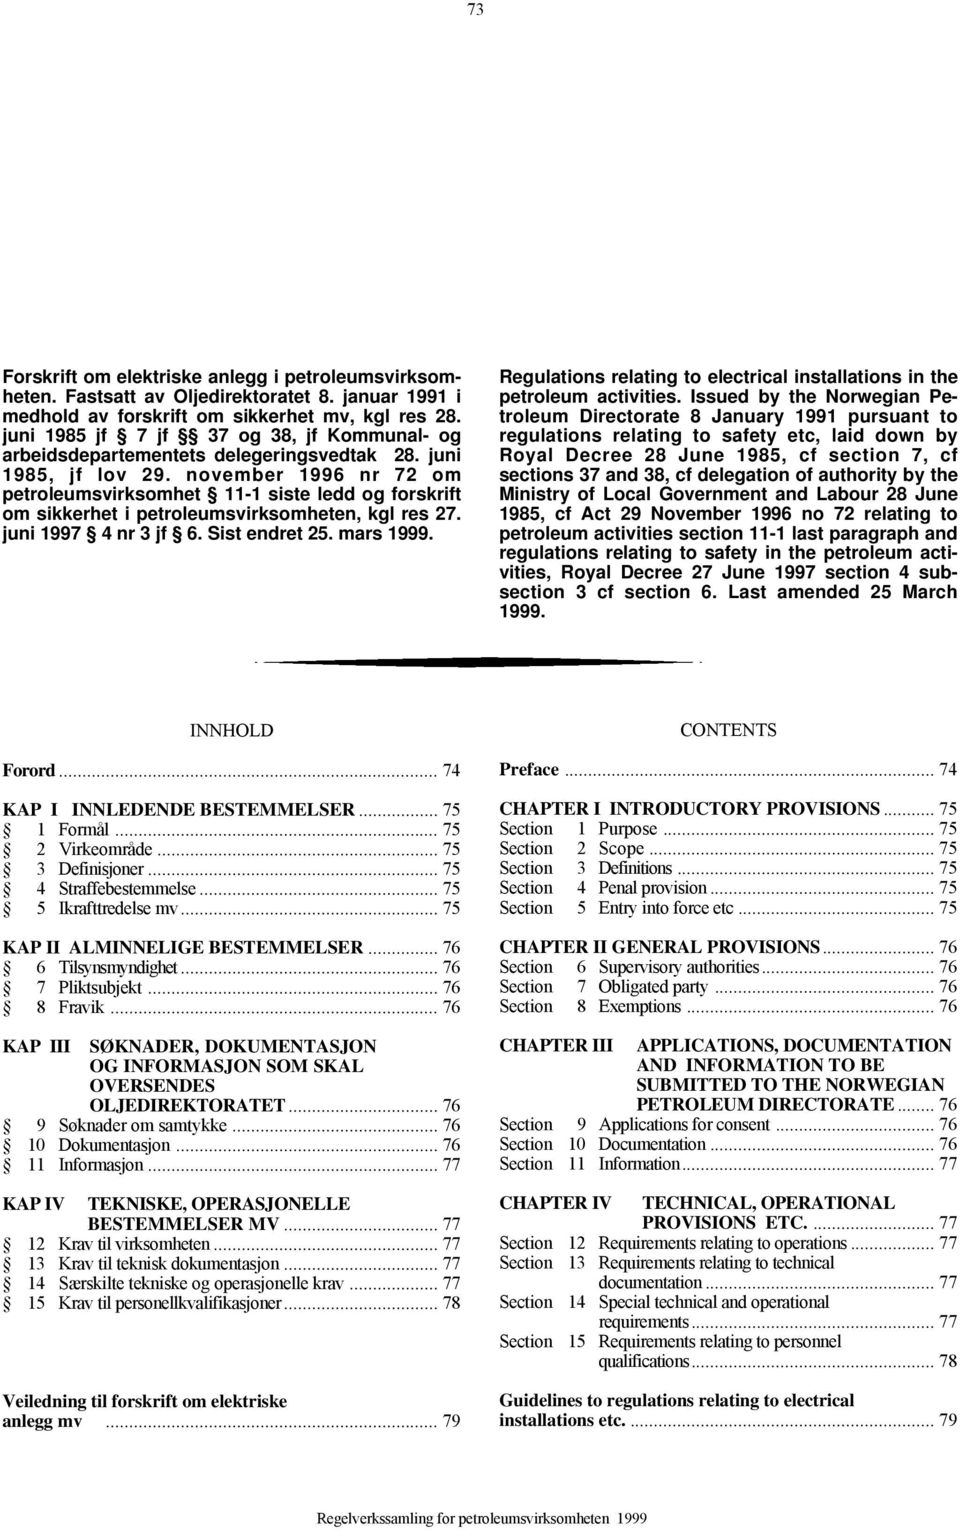 november 1996 nr 72 om petroleumsvirksomhet 11-1 siste ledd og forskrift om sikkerhet i petroleumsvirksomheten, kgl res 27. juni 1997 4 nr 3 jf 6. Sist endret 25. mars 1999.